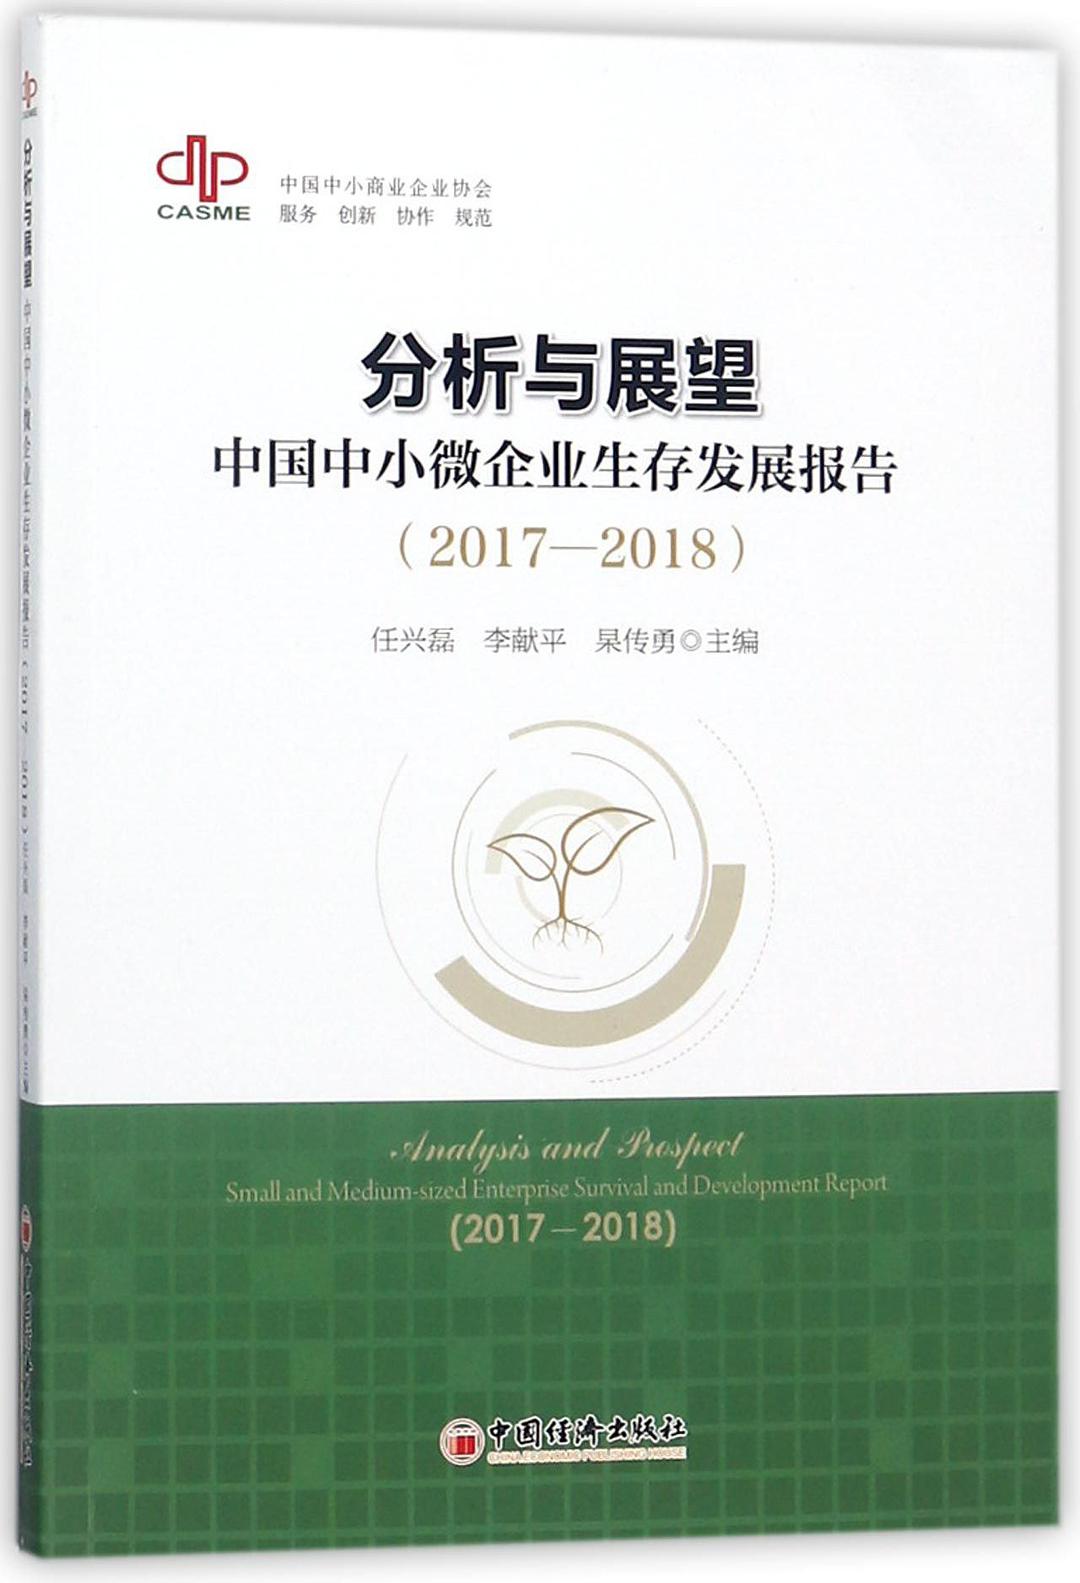 分析与展望 中国中小微企业生存发展报告 2017-2018